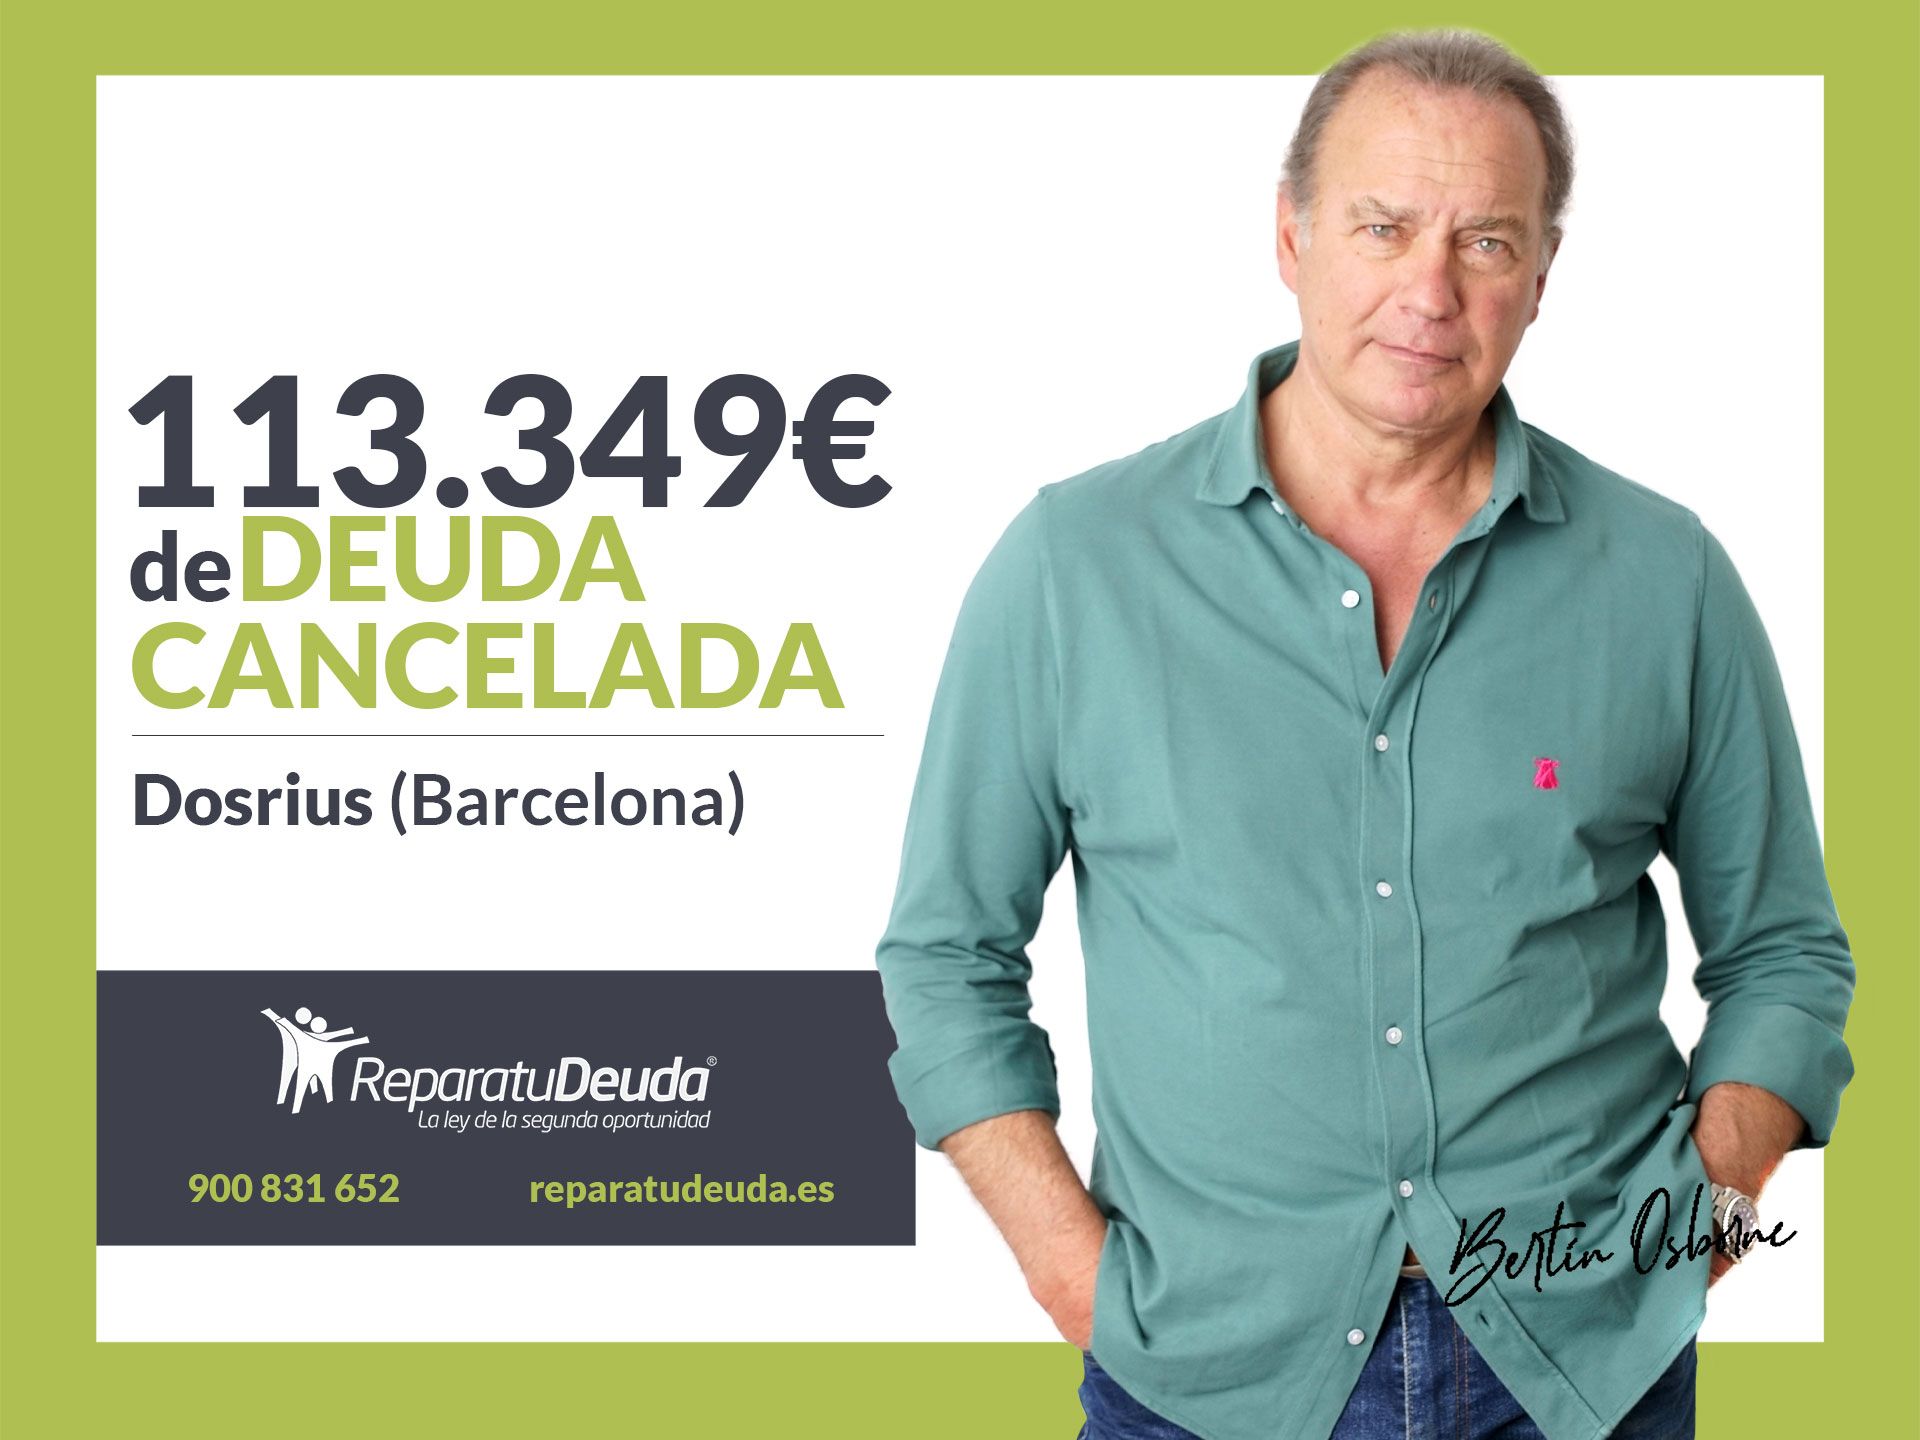 Repara tu Deuda Abogados cancela 113.349? en Dosrius (Barcelona) gracias a la Ley de Segunda Oportunidad